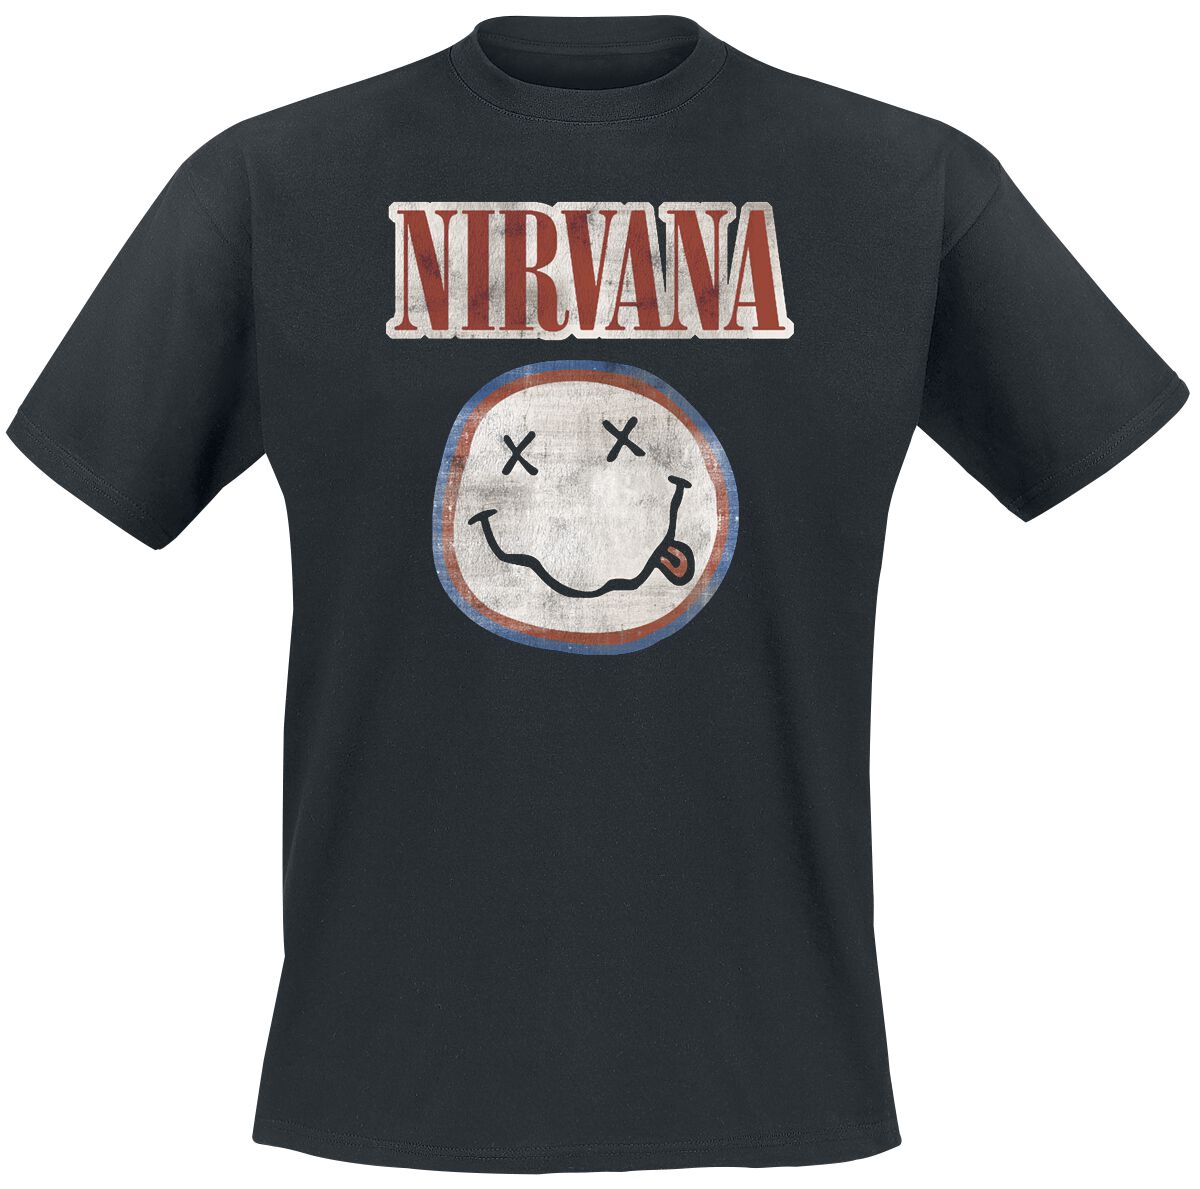 Nirvana T-Shirt - Distressed Logo - S bis XXL - für Männer - Größe L - schwarz  - Lizenziertes Merchandise!